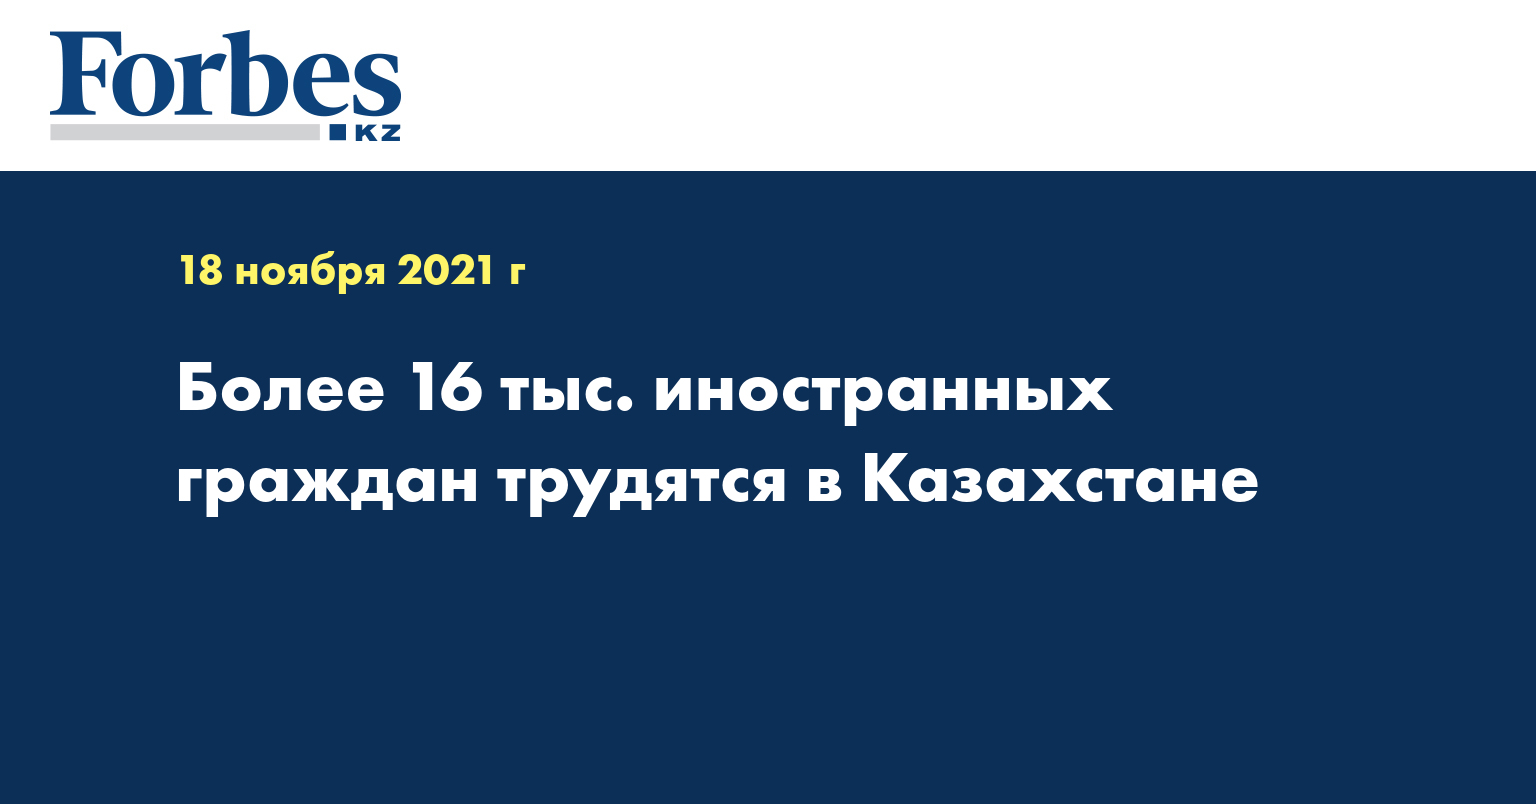 Более 16 тыс. иностранных граждан трудятся в Казахстане